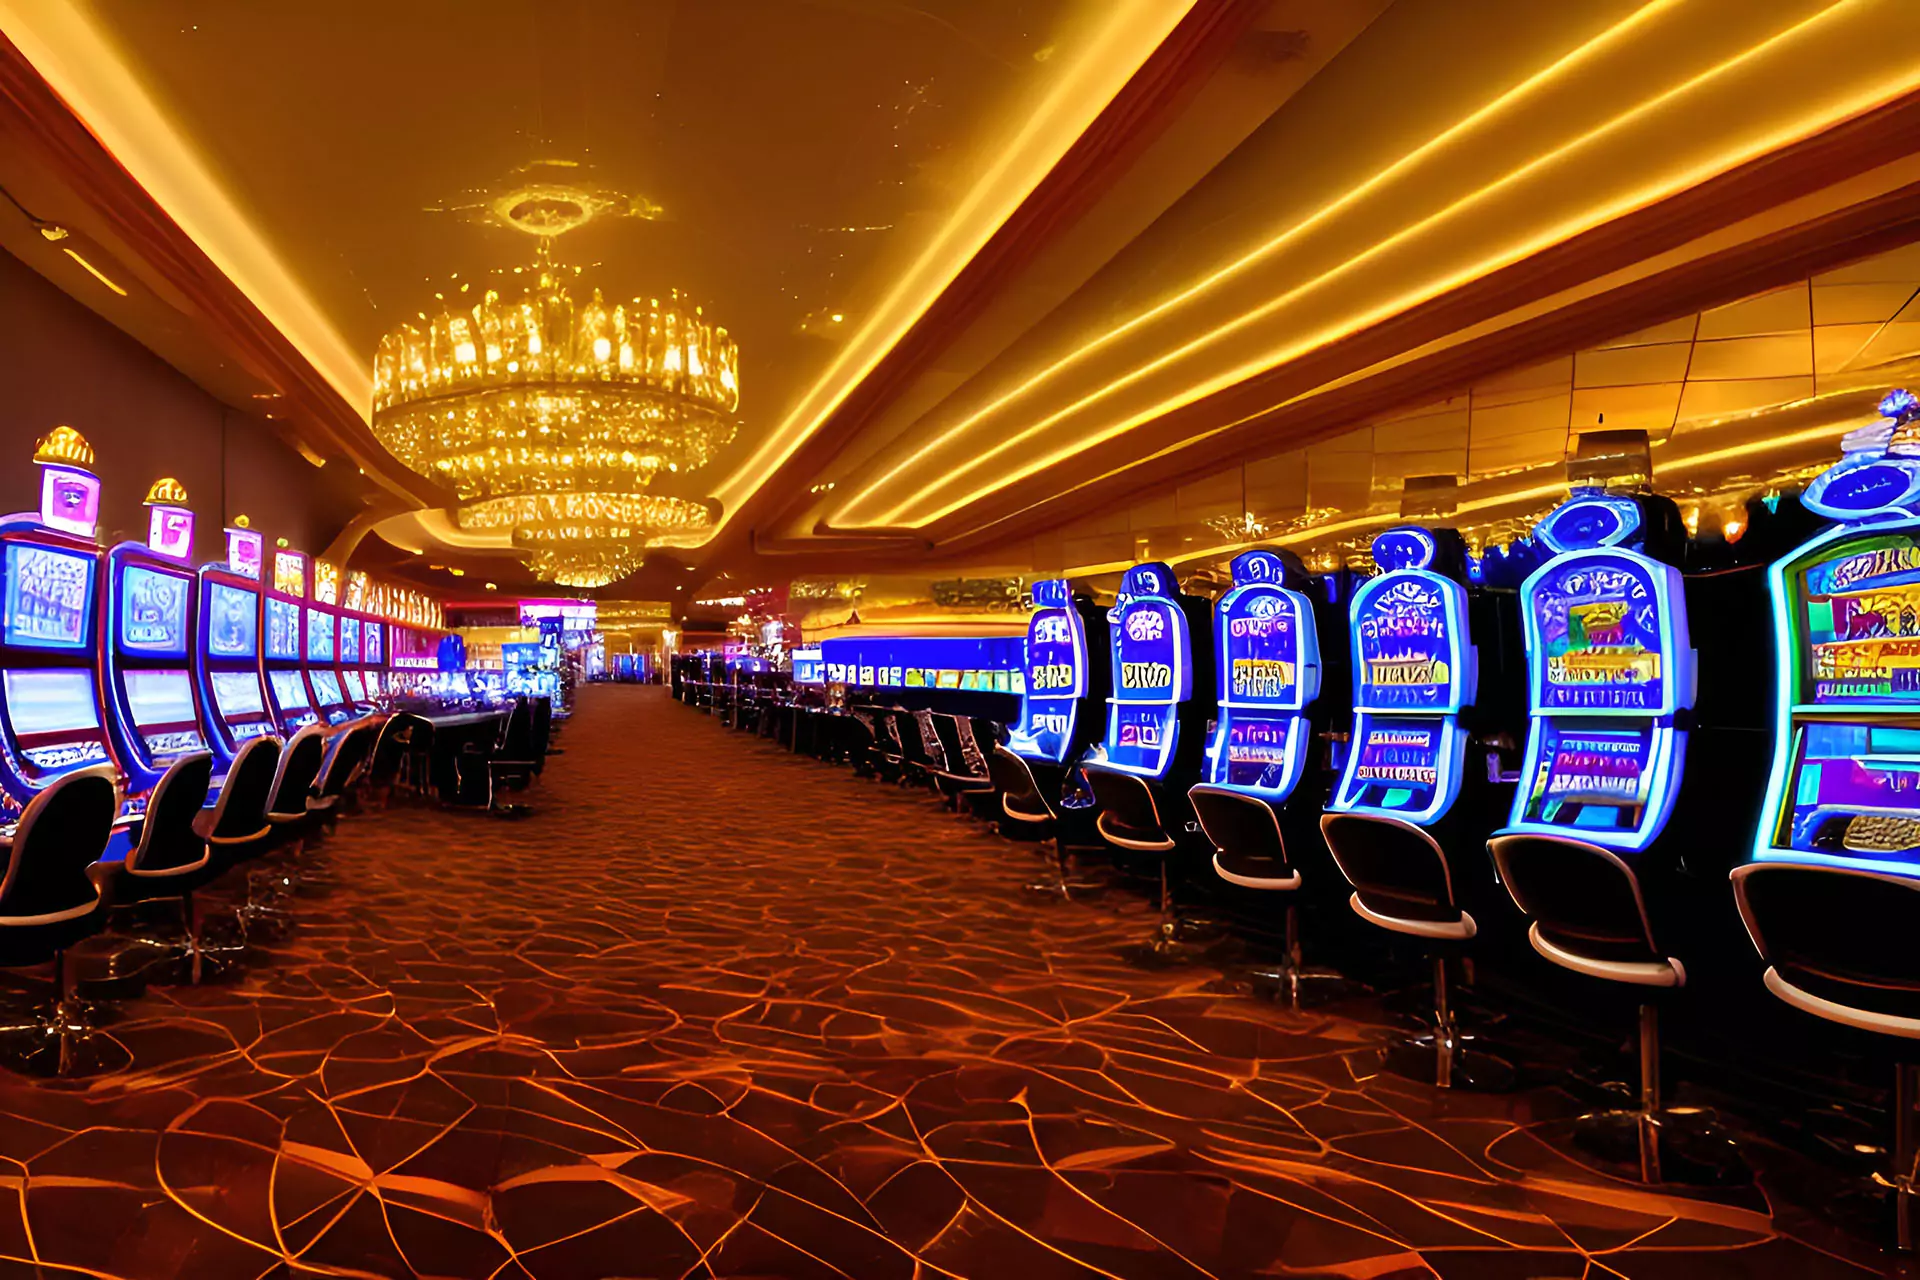 Ontario Casino interior